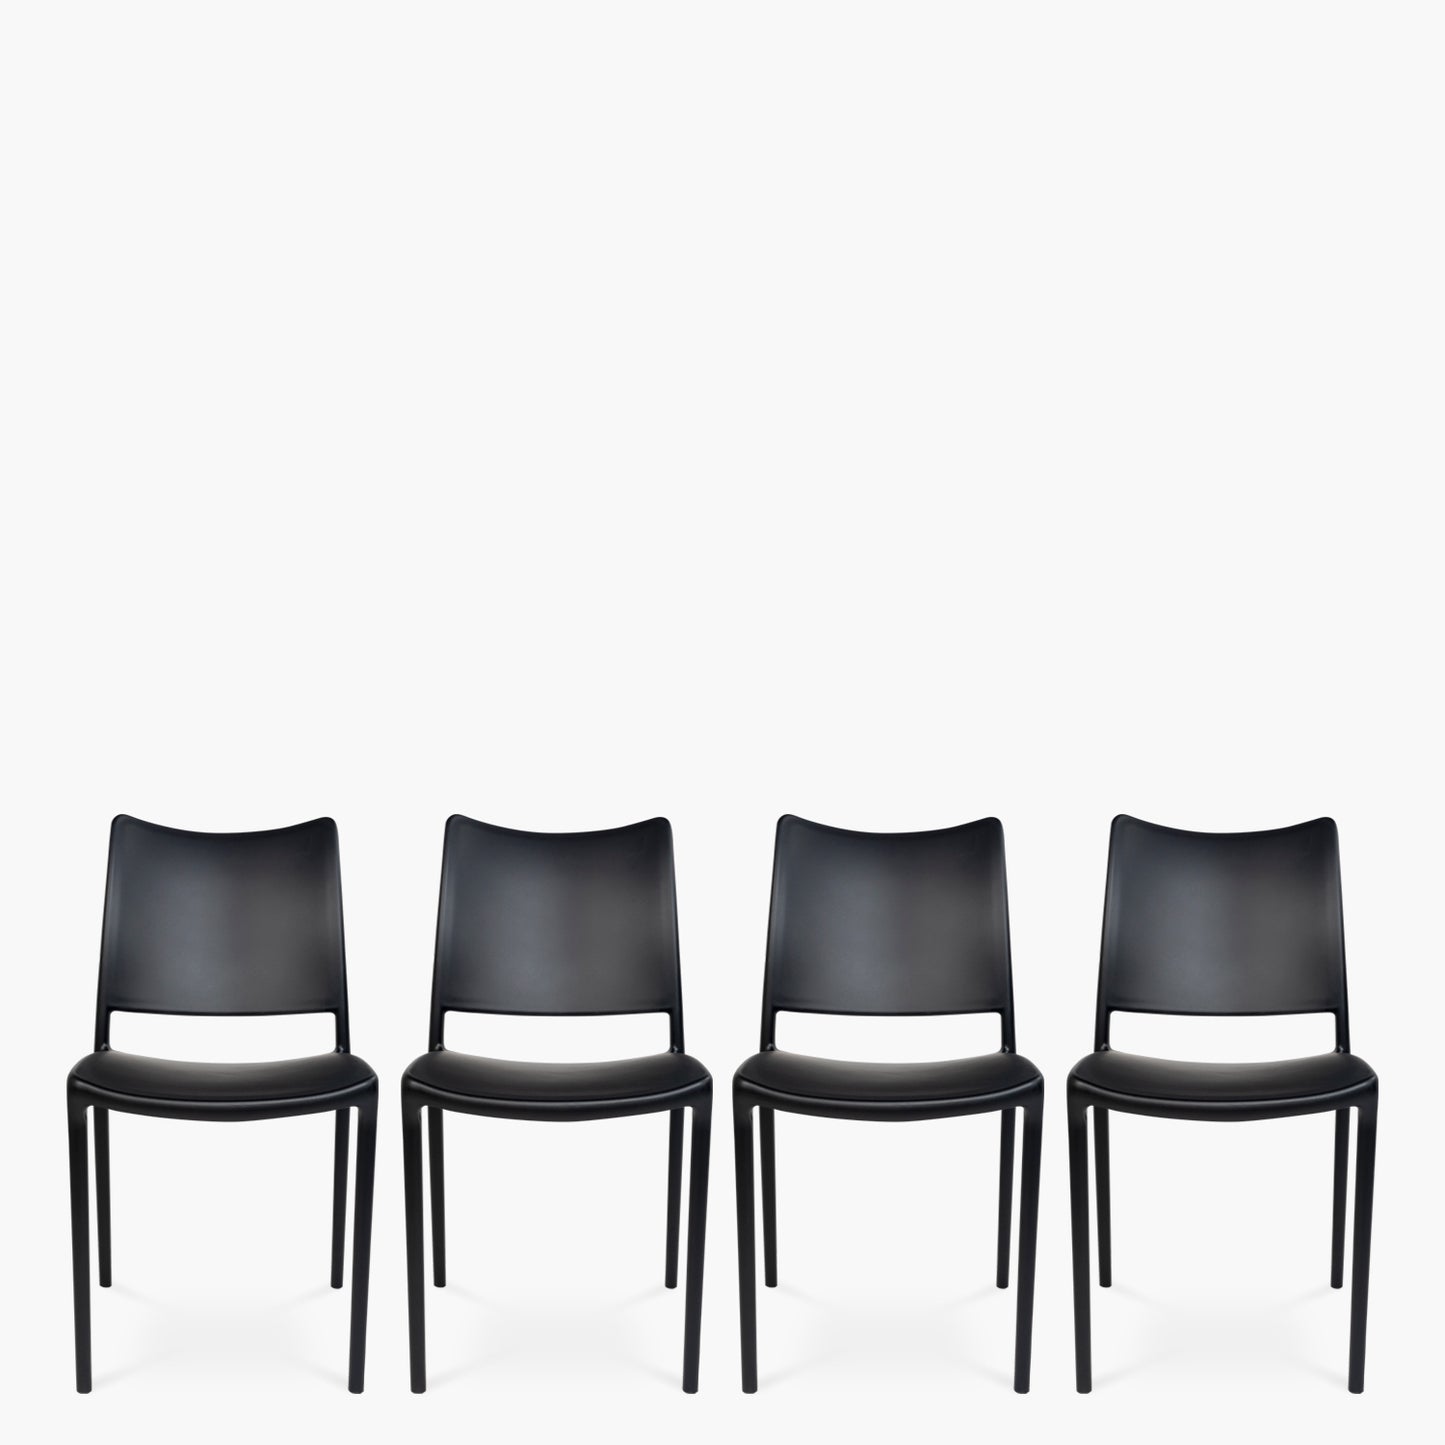 packs-4-sillas-plastico-terraza-todi-negro